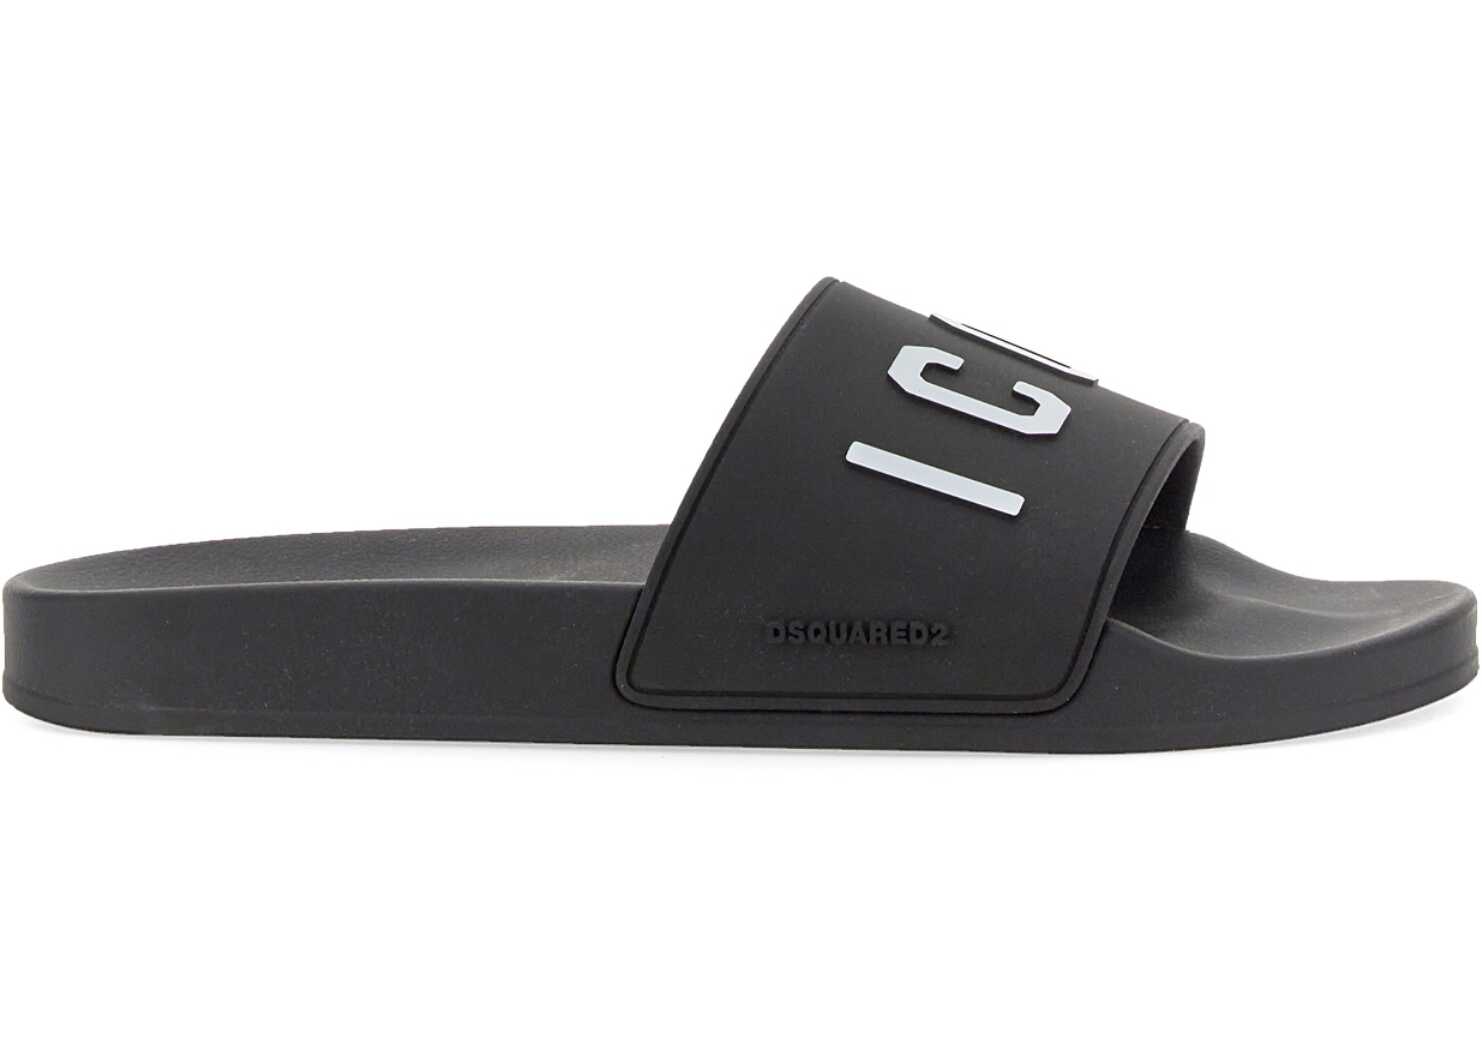 DSQUARED2 Rubber Slide Sandal BLACK b-mall.ro